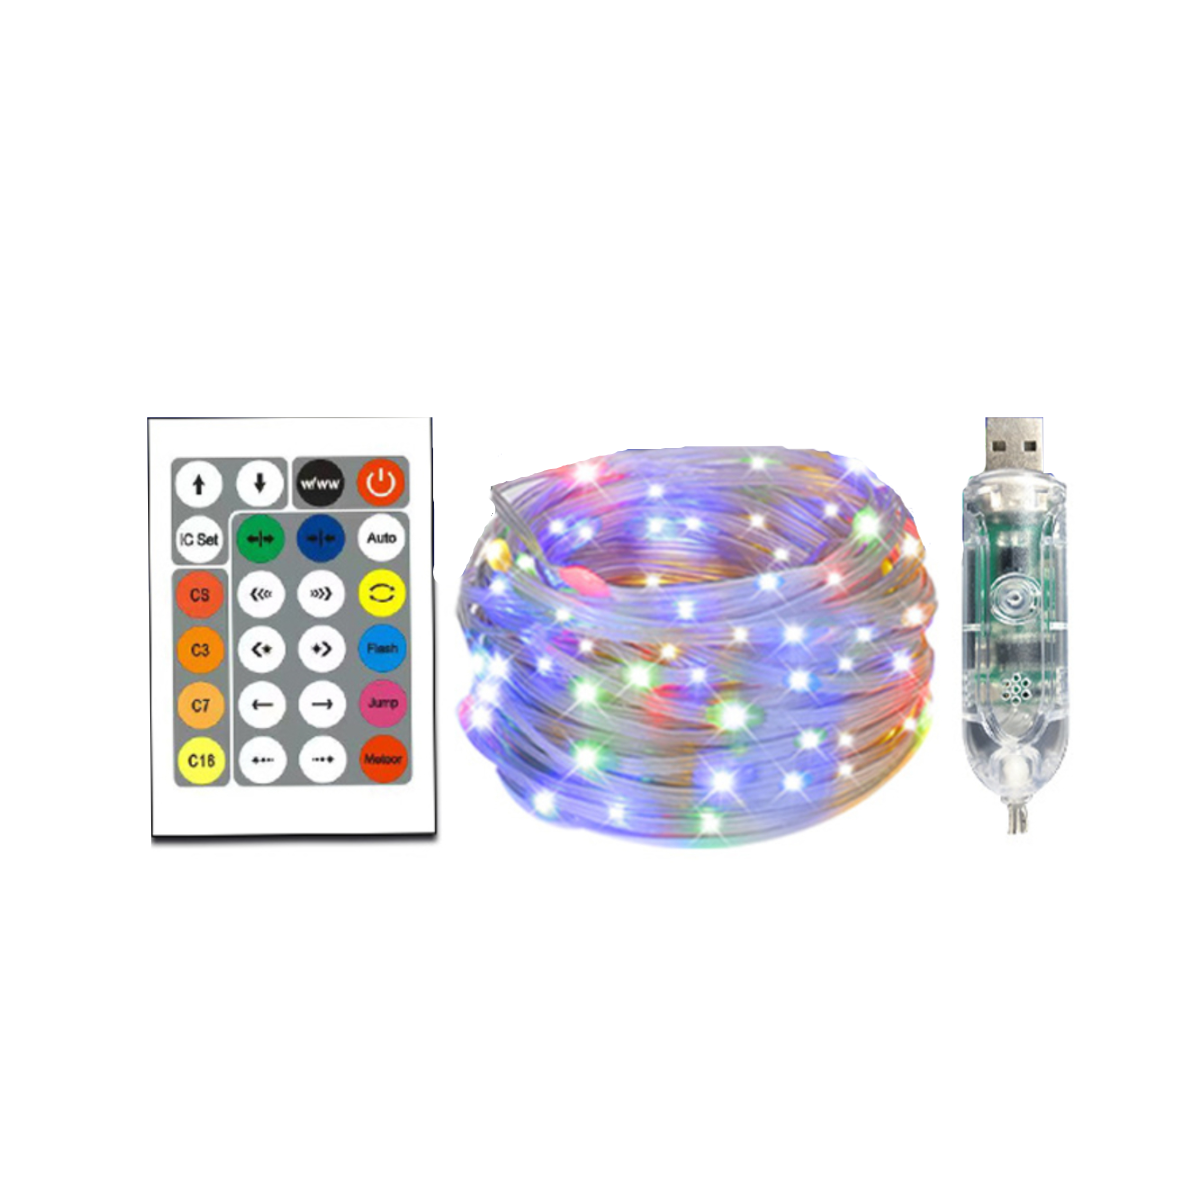 UWOT Sprachaktivierter Lichtstreifen-USB: Bluetooth&APP-Steuerung, 10M LED Stripes, white Atmosphärenlicht weihnachtliches